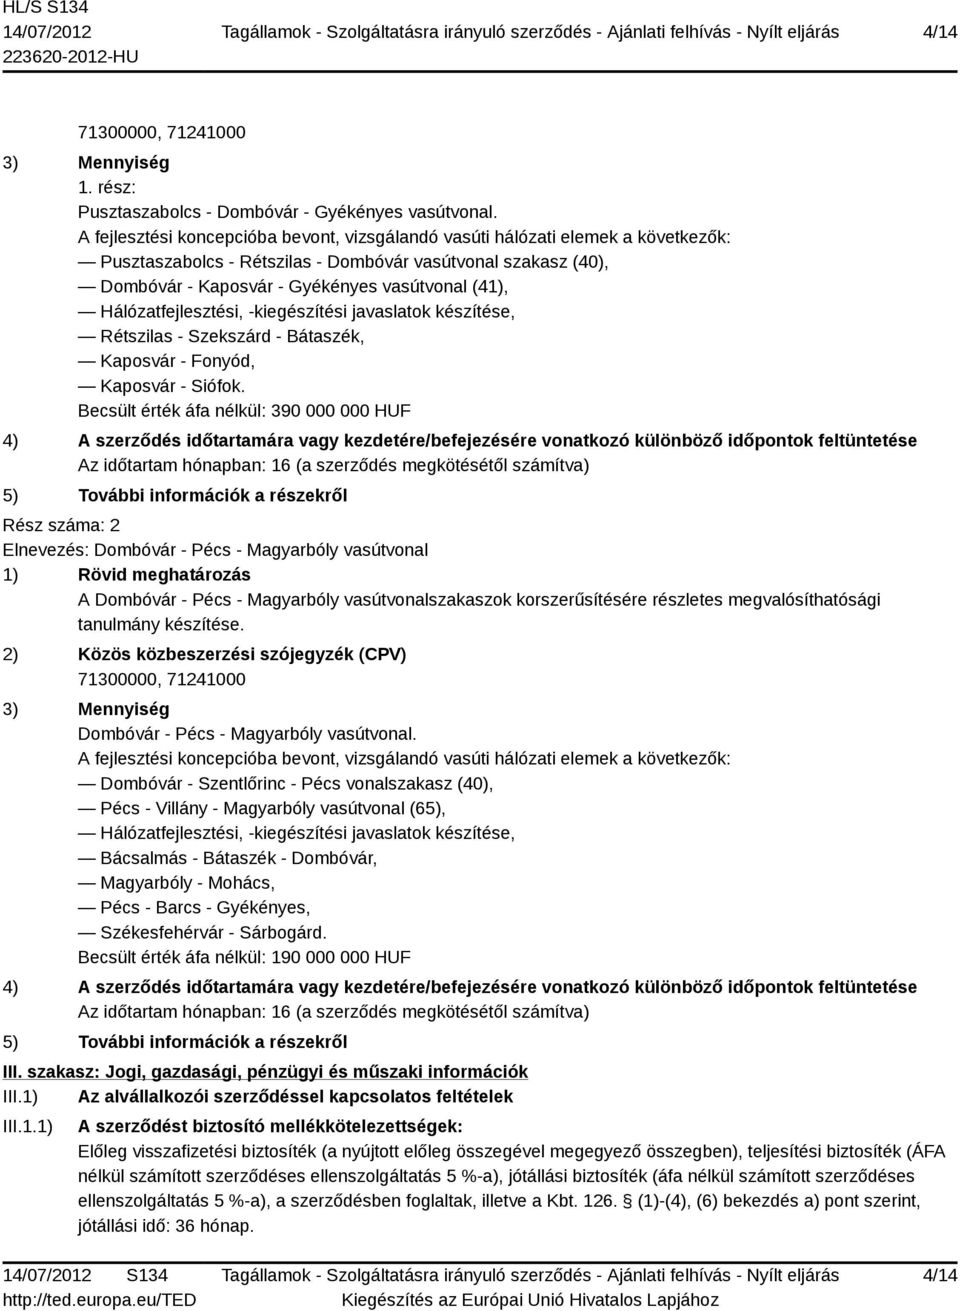 Hálózatfejlesztési, -kiegészítési javaslatok készítése, Rétszilas - Szekszárd - Bátaszék, Kaposvár - Fonyód, Kaposvár - Siófok.